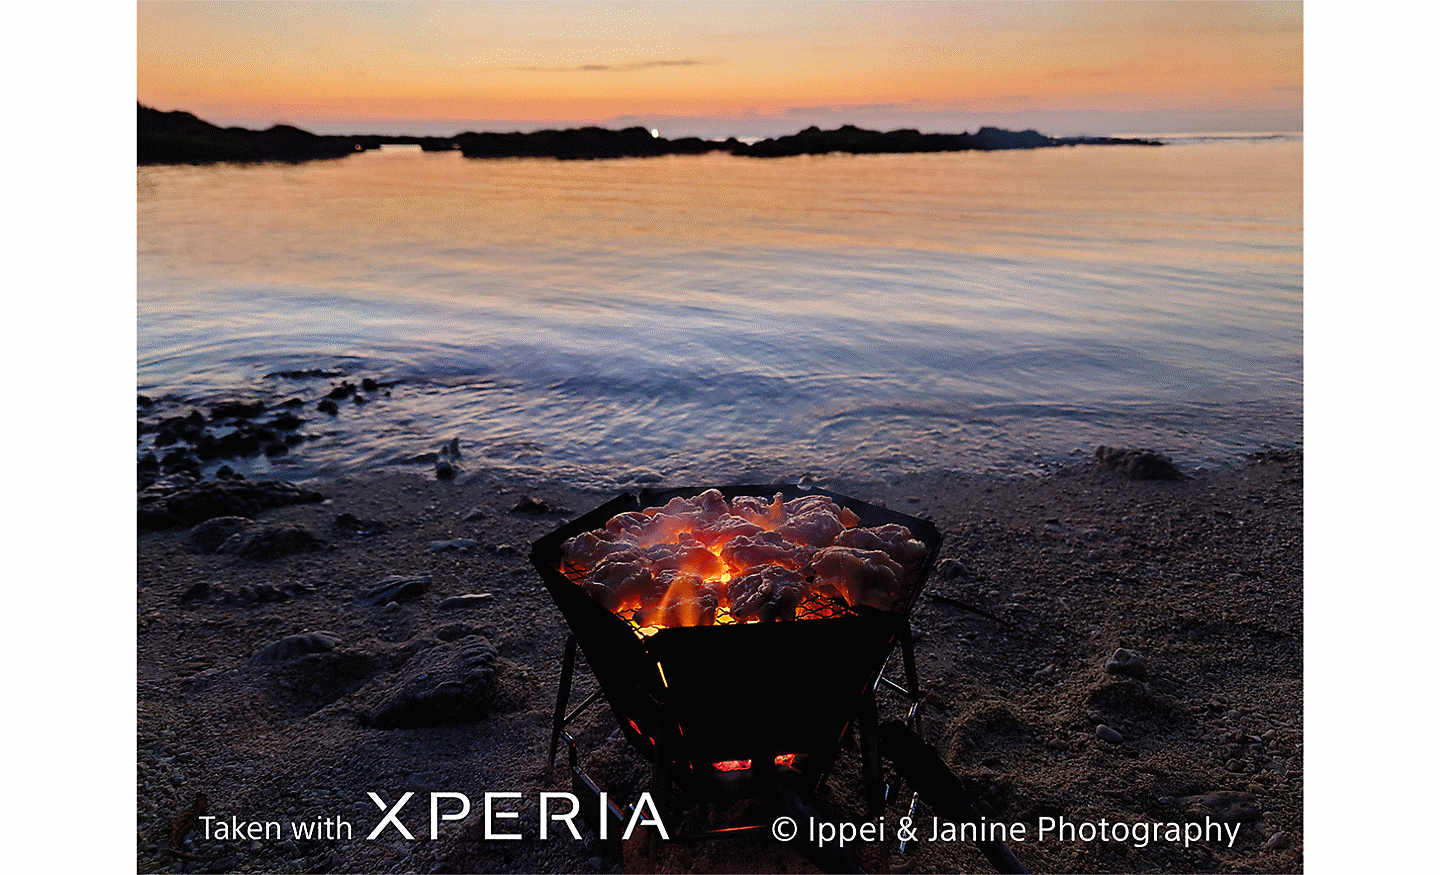 O vatră incandescentă pe o plajă, cu vedere spre apă la apus. Textul: „Realizat cu XPERIA ©Ippei & Janine Photography".